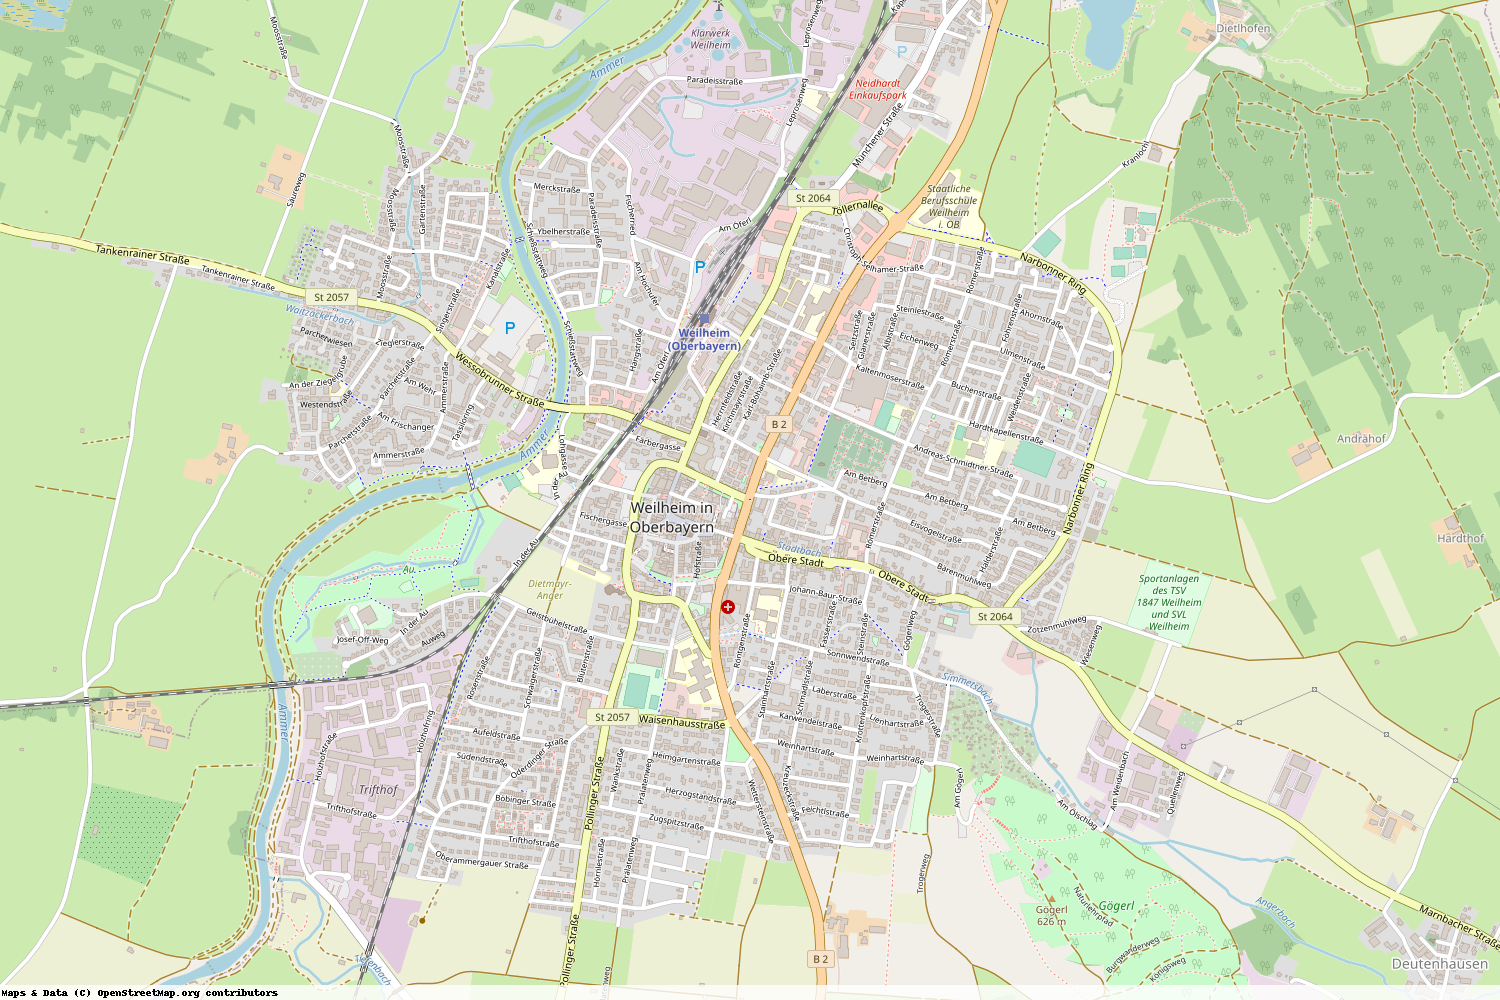 Ist gerade Stromausfall in Bayern - Weilheim-Schongau - Weilheim i. OB?